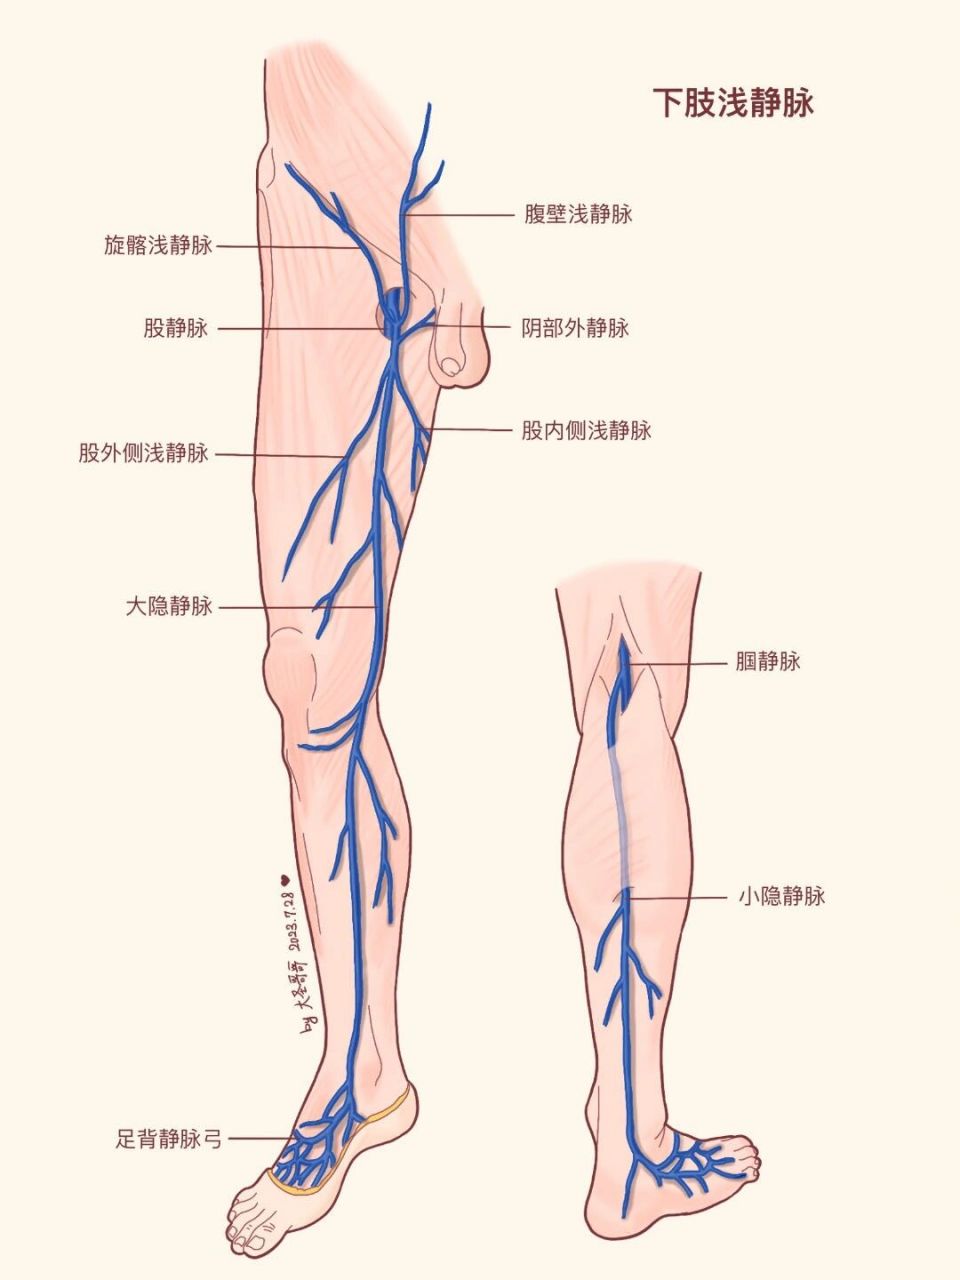 下肢静脉瓣图片